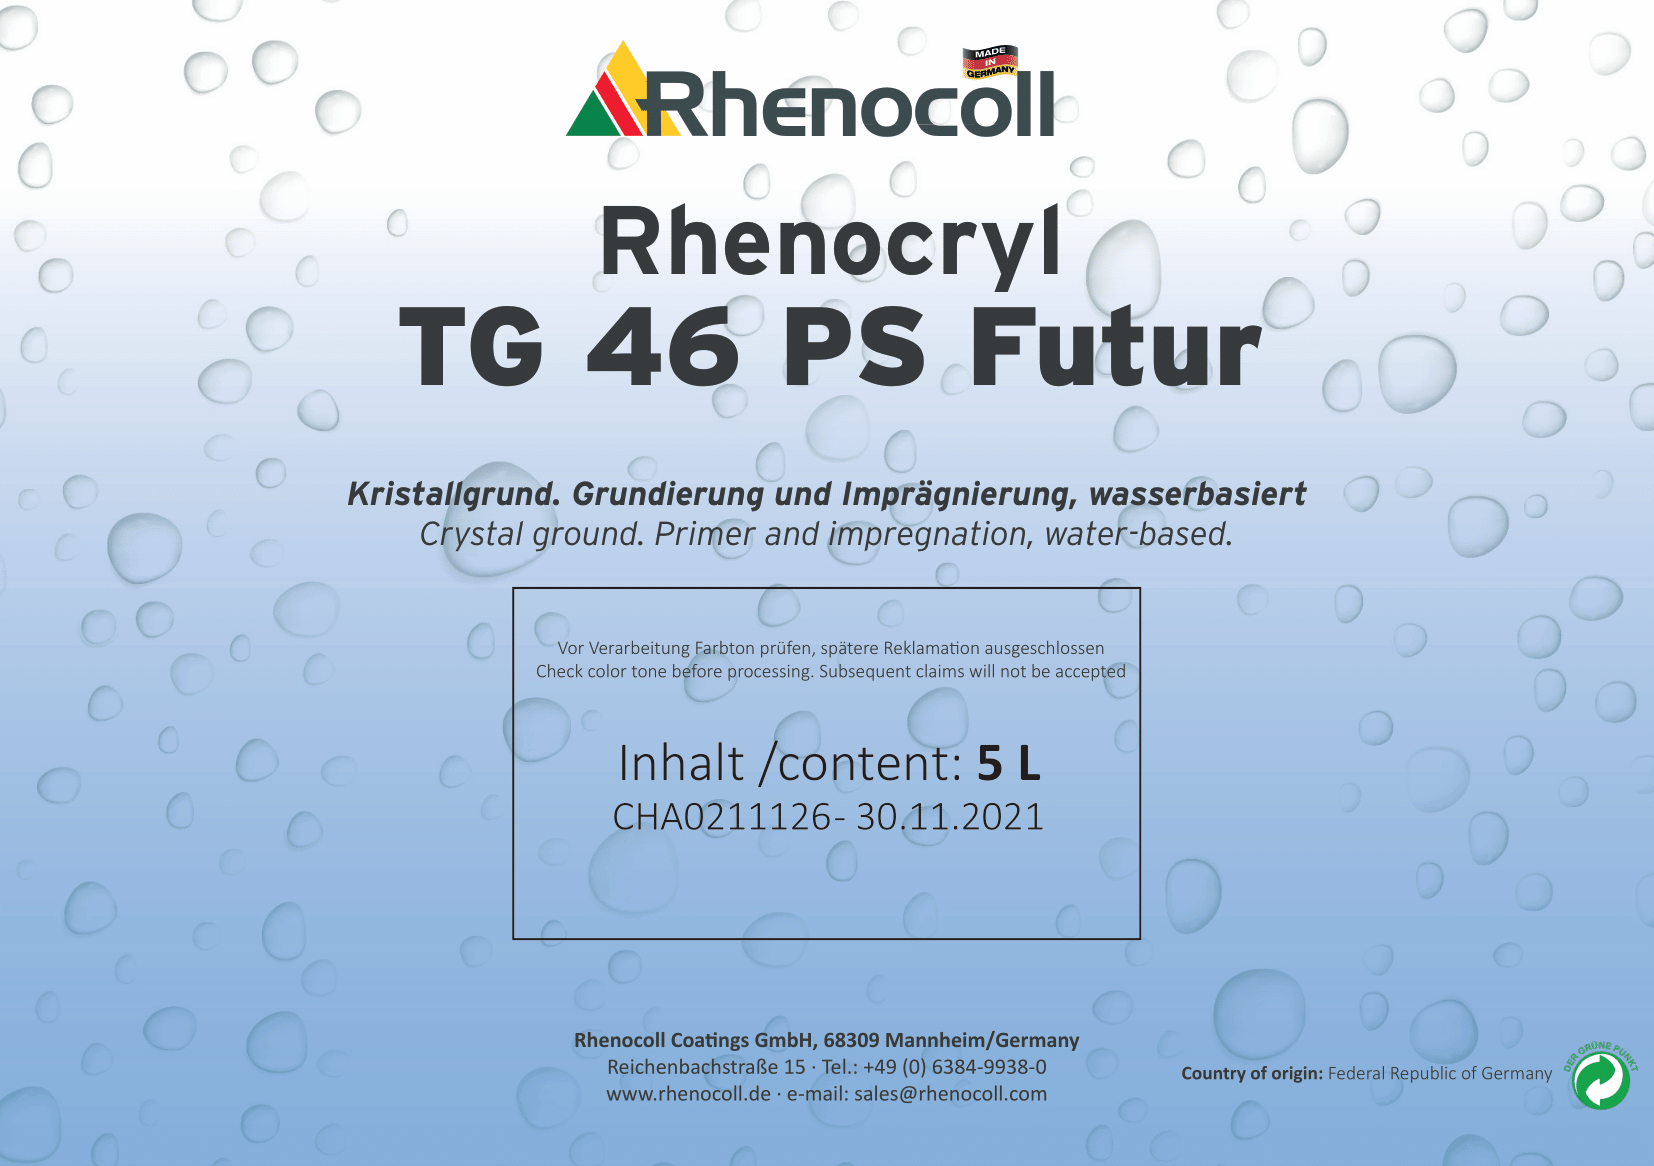 Rhenocryl TG 46 PS Futur